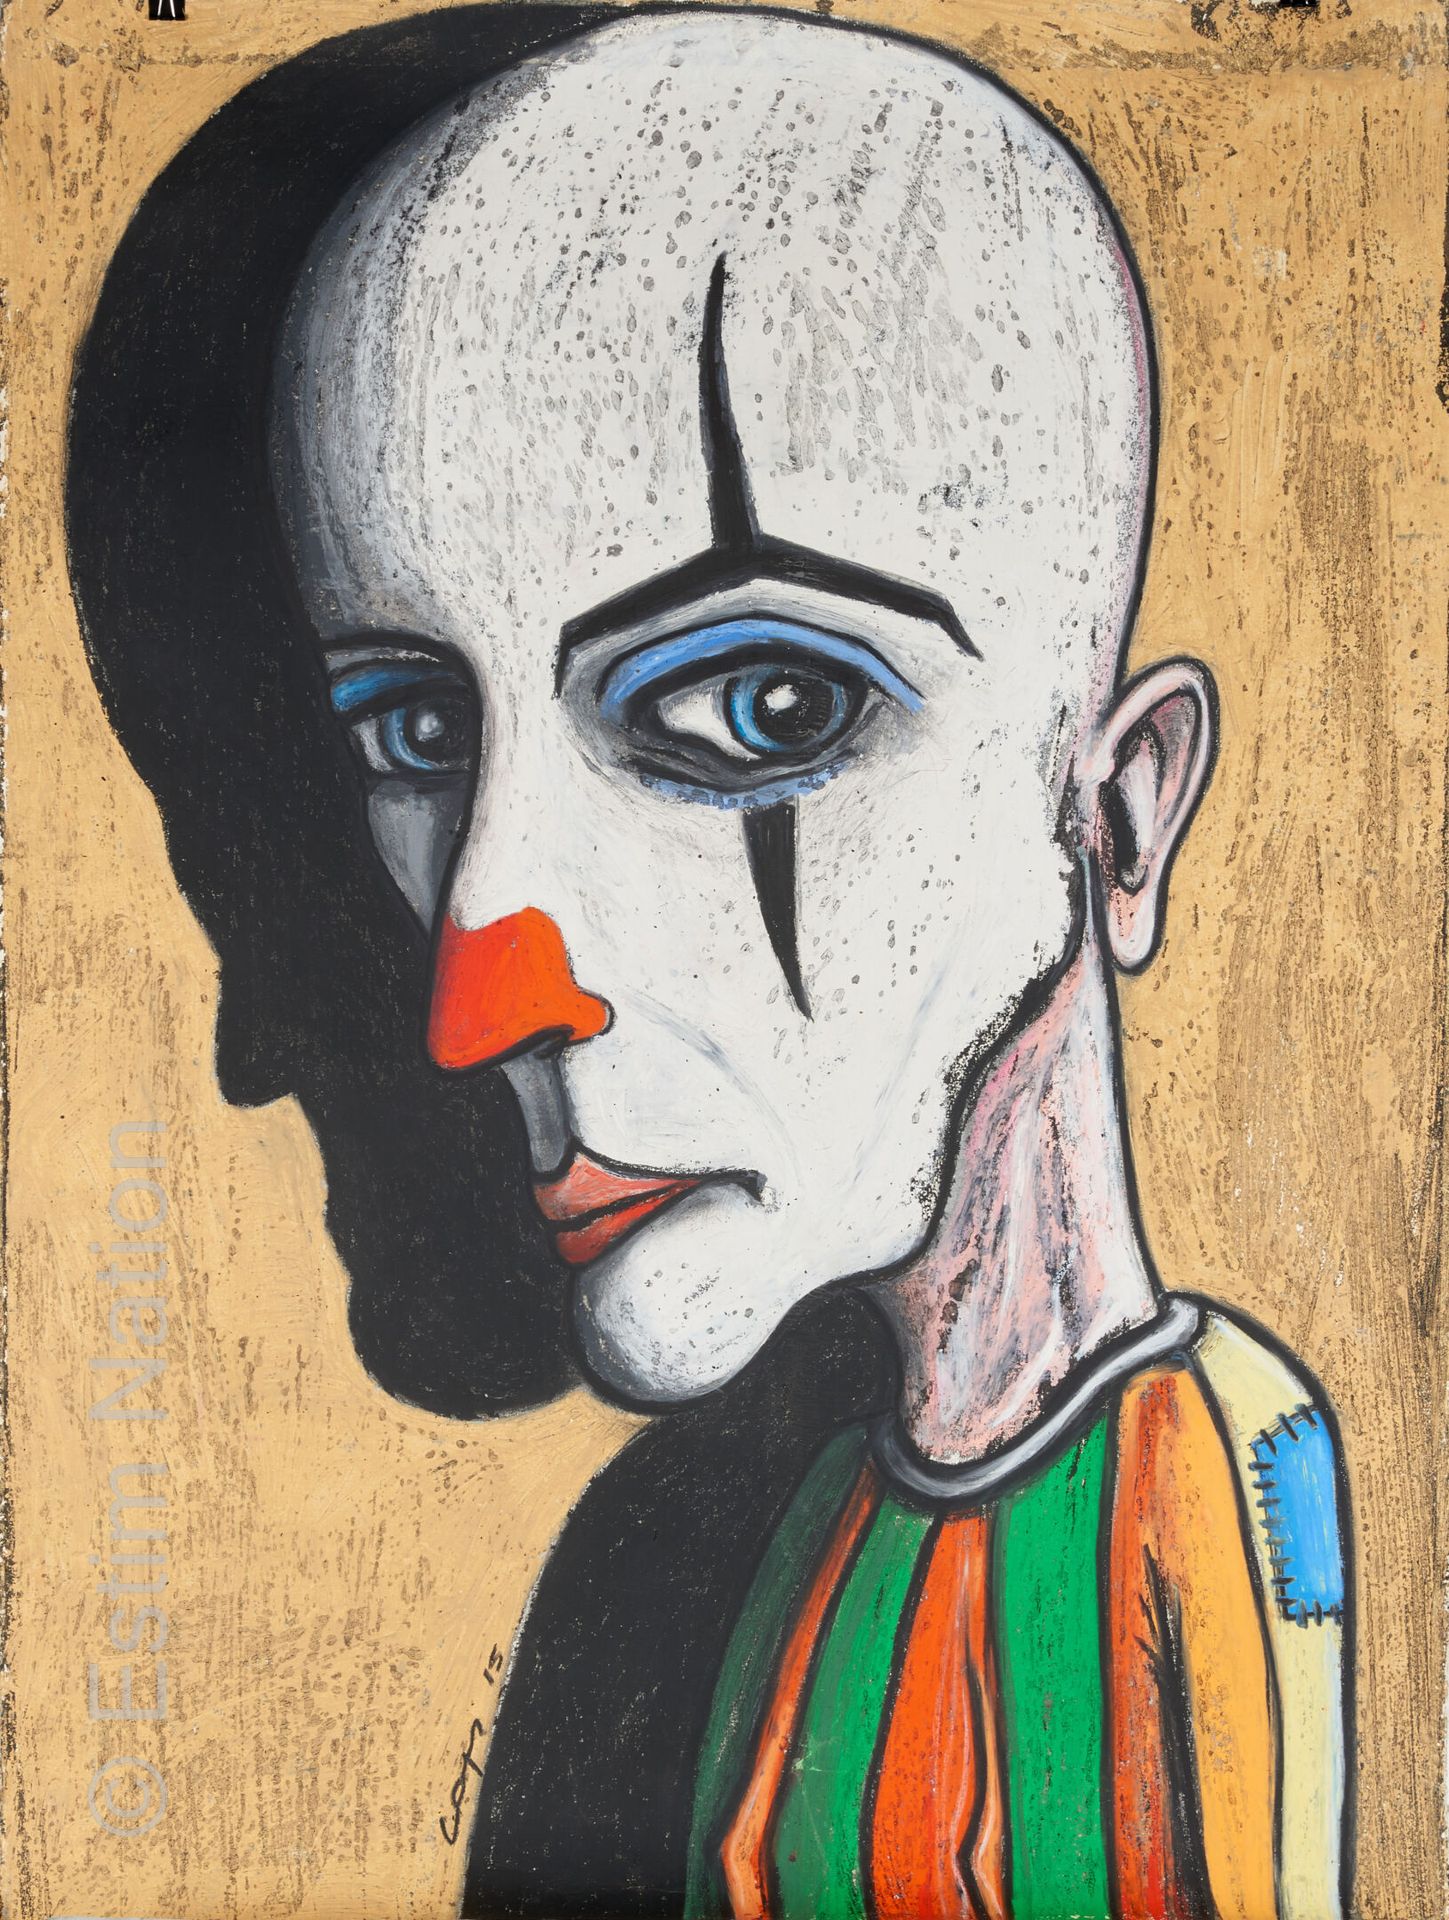 ART CONTEMPORAIN - LAPS - DIVERS Eric LAPS (1968)

Clown

Gouache sur papier, si&hellip;